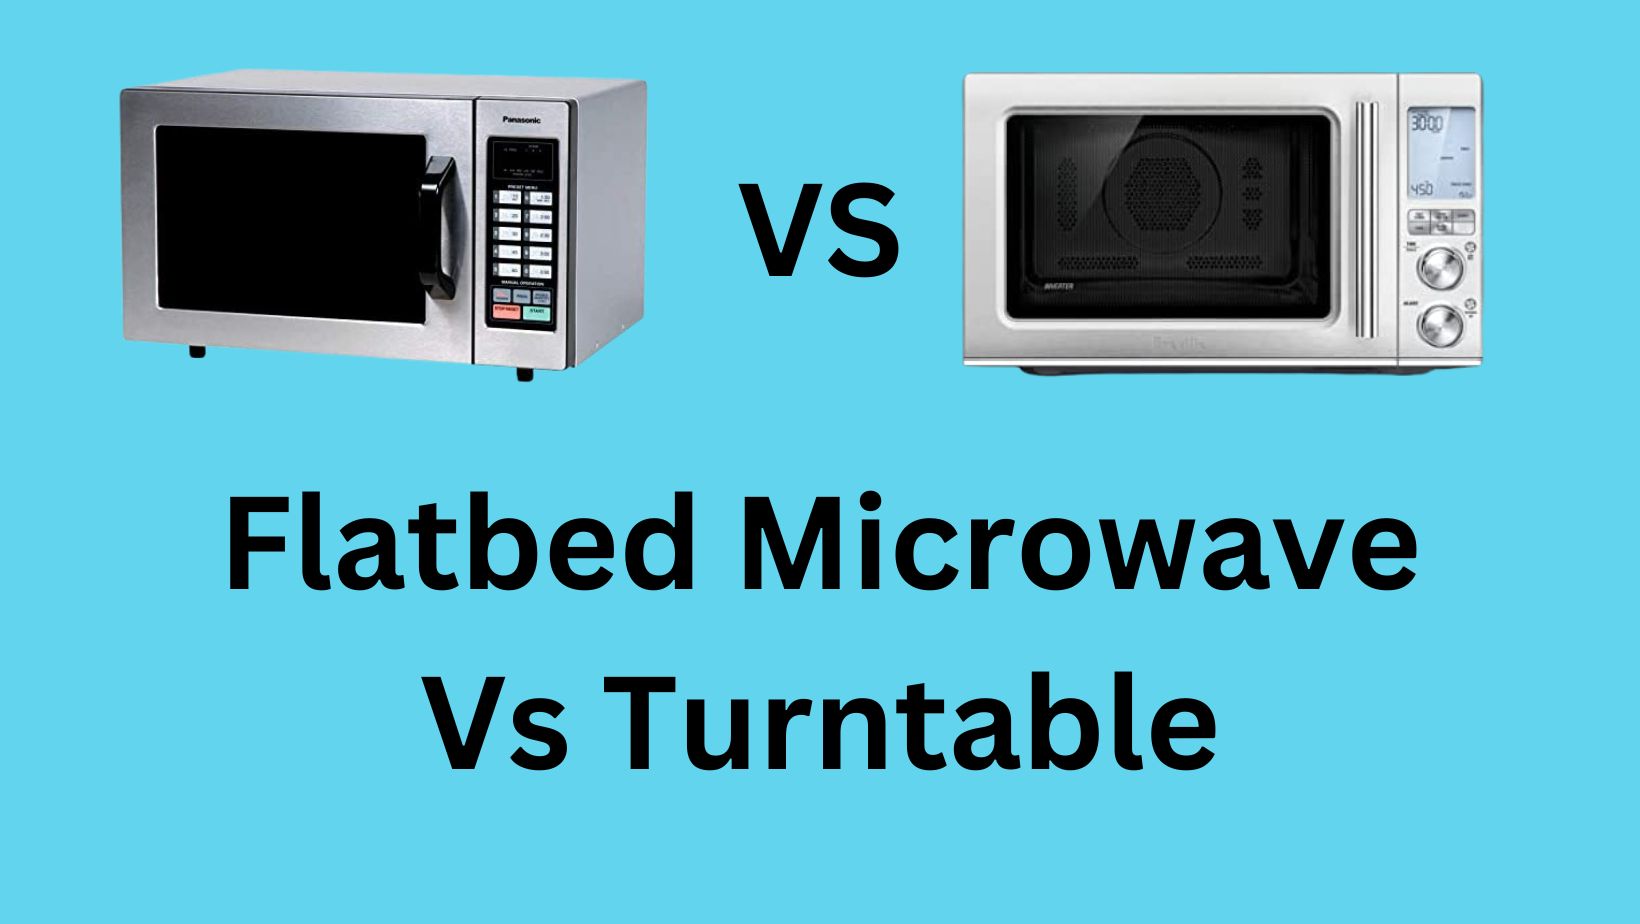 flatbet microwave vs turntable